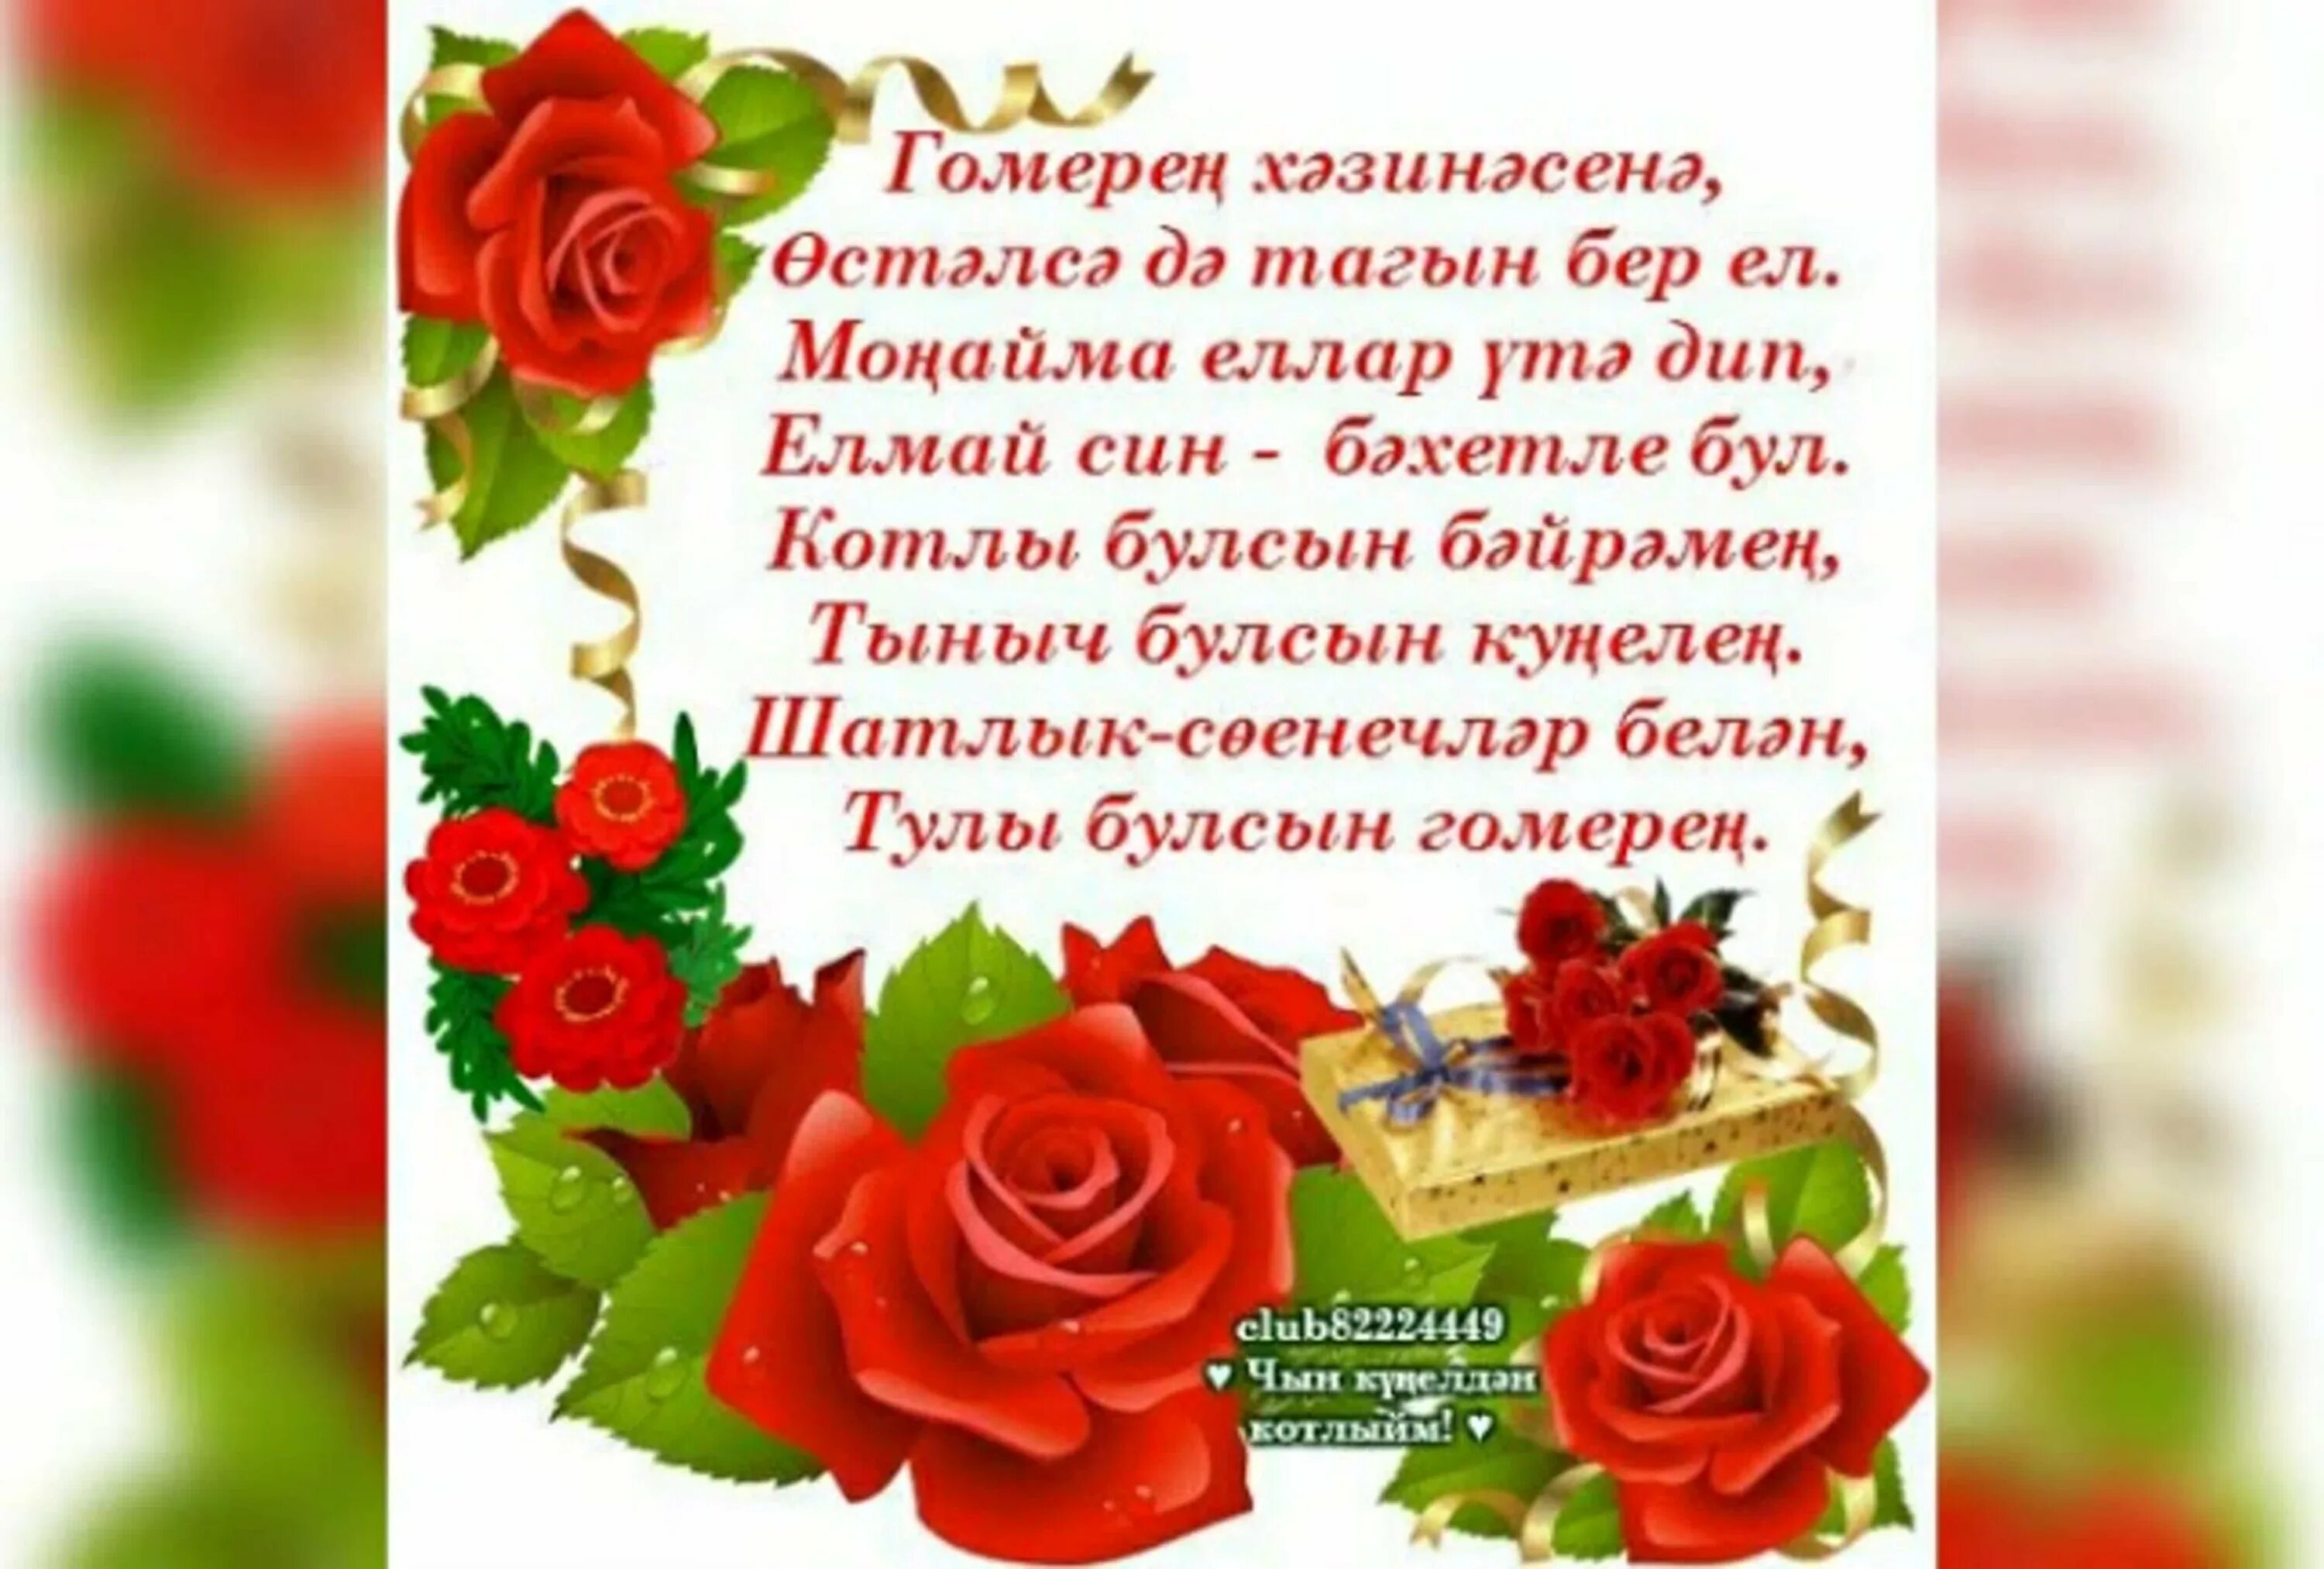 Поздравления на кабардинском языке с днем рождения. Поздравления с днём рождения на татарском языке. Поздравление на татарском языке. Татарские поздравления с днем рождения. Поздравления с днём рождения женщине на татарском языке.